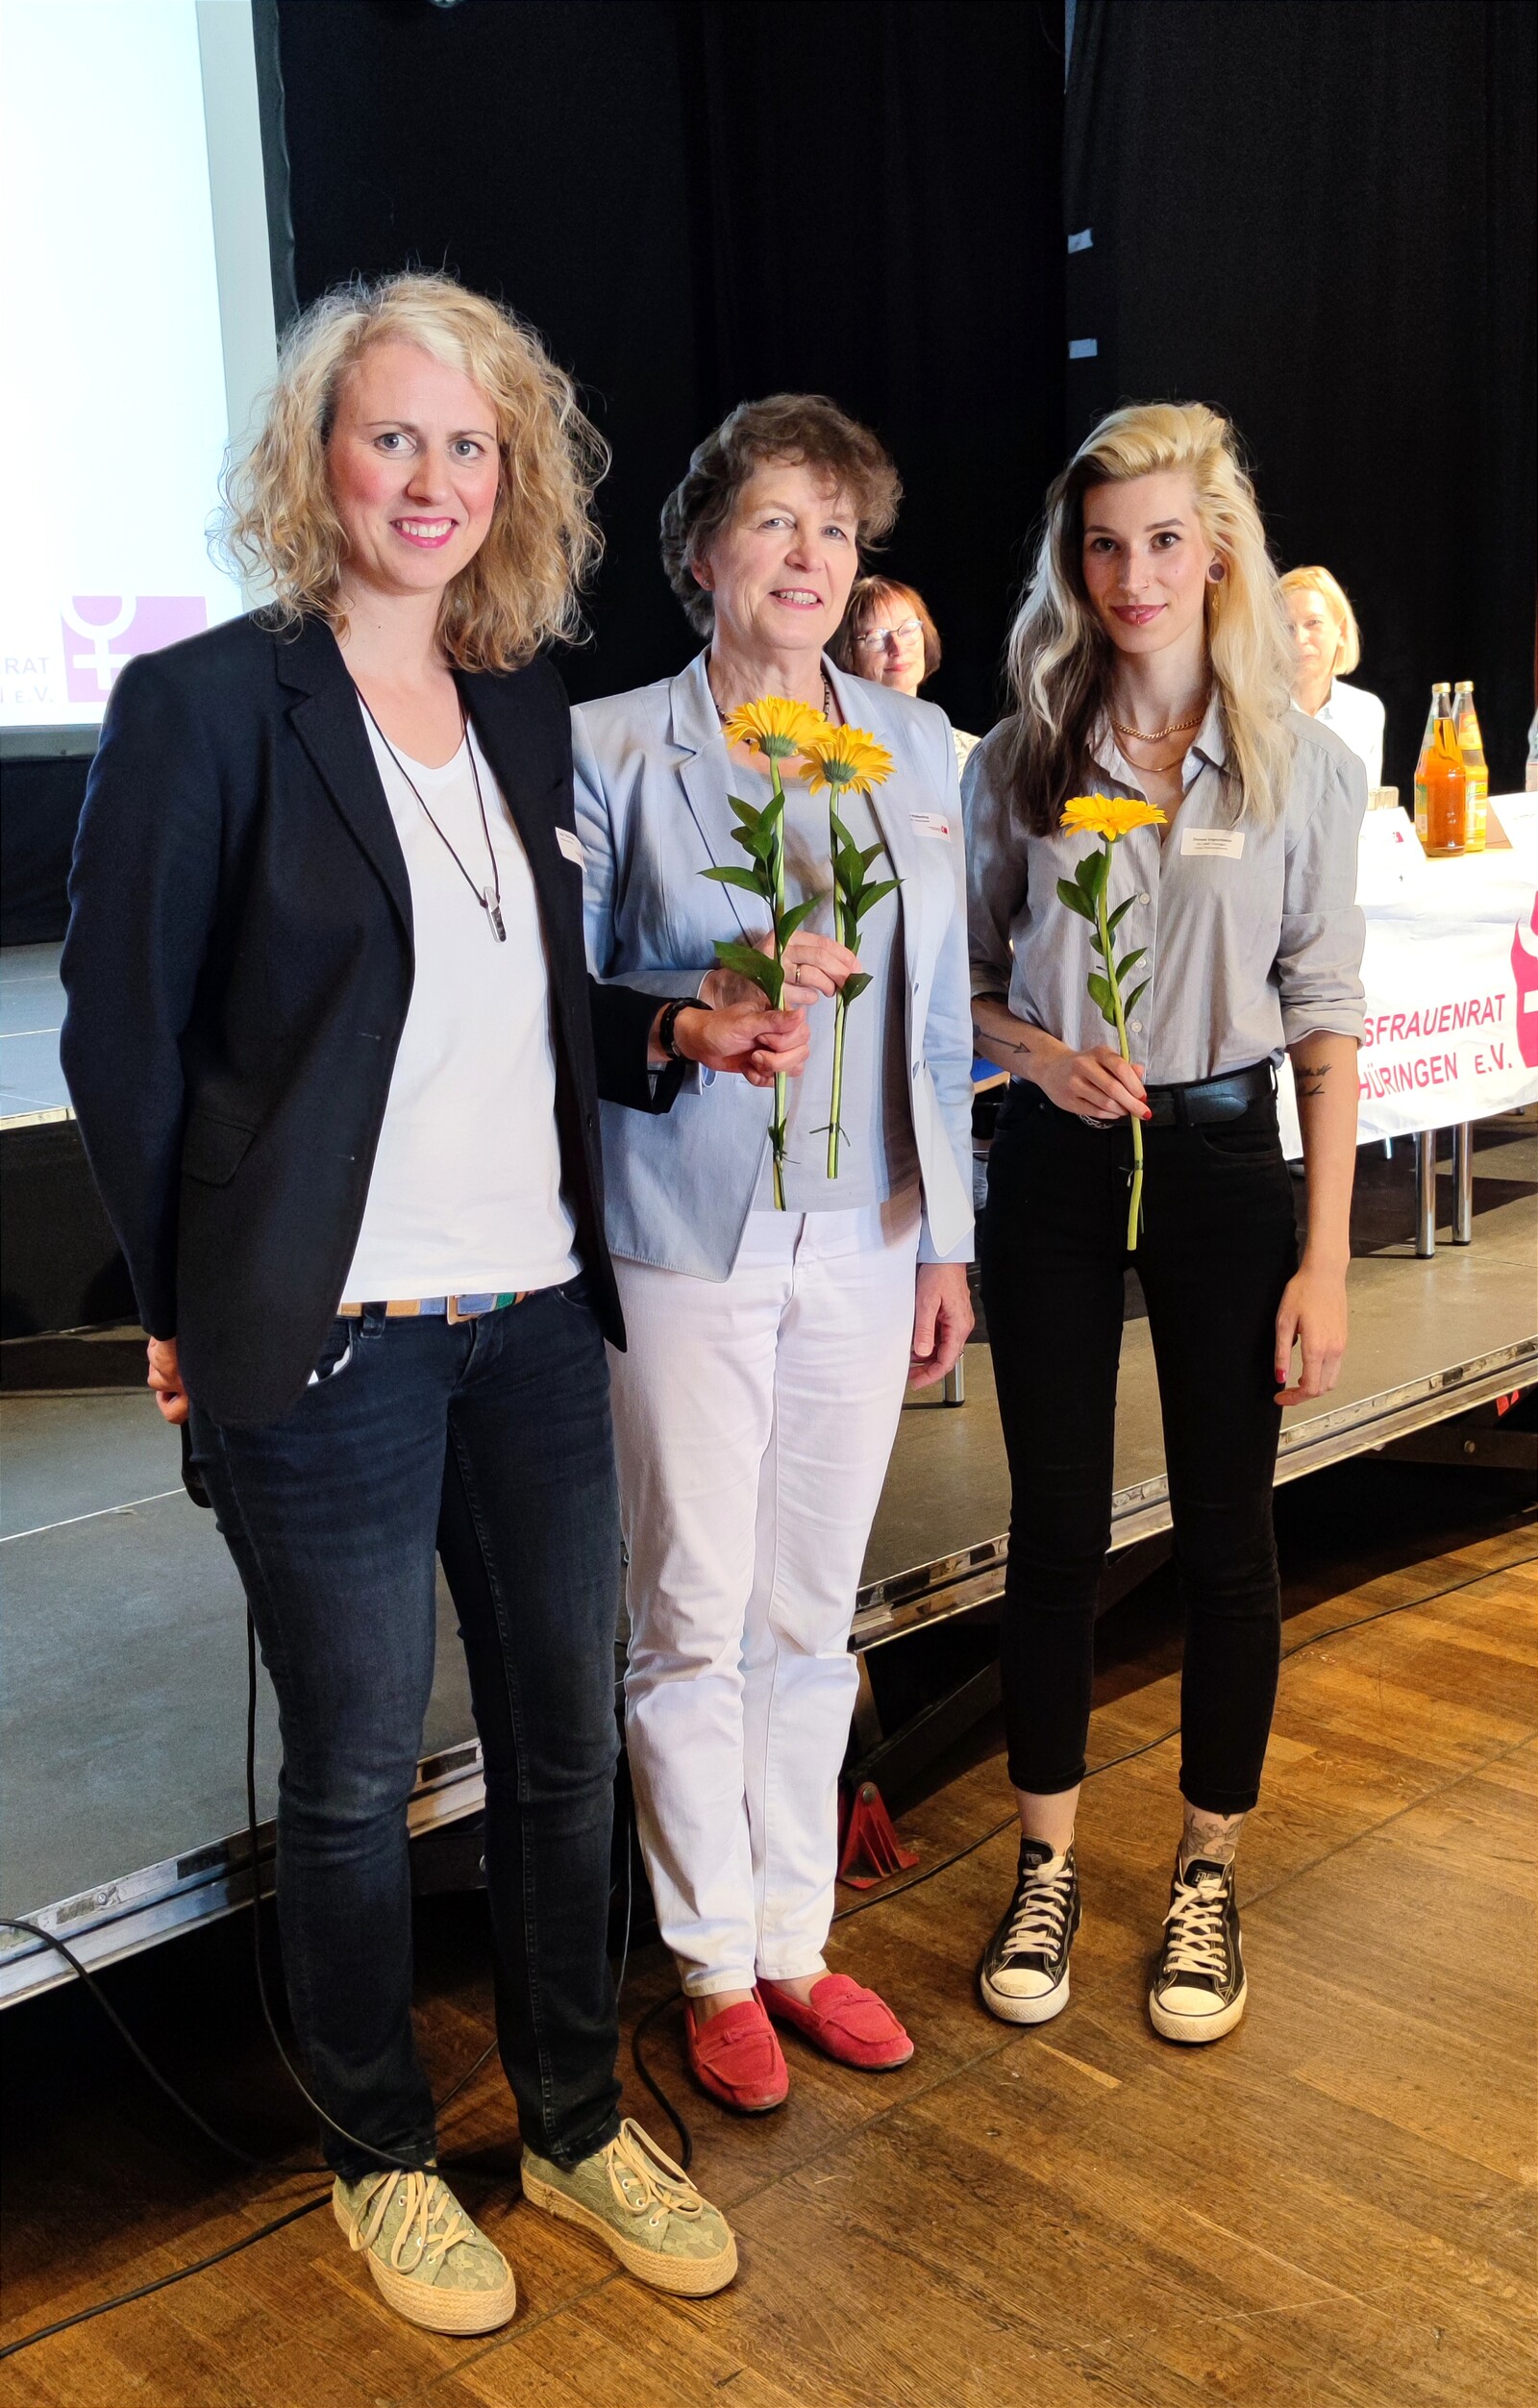 neu gewählter Vorstand des Landesfrauenrats Thüringen: Julia Hohmann (Vorsitzende), Ina Wäßerling (Schatzmeisterin), Donata Vogtschmidt (stellvertretende Vorsitzende), Evelyn Kranz